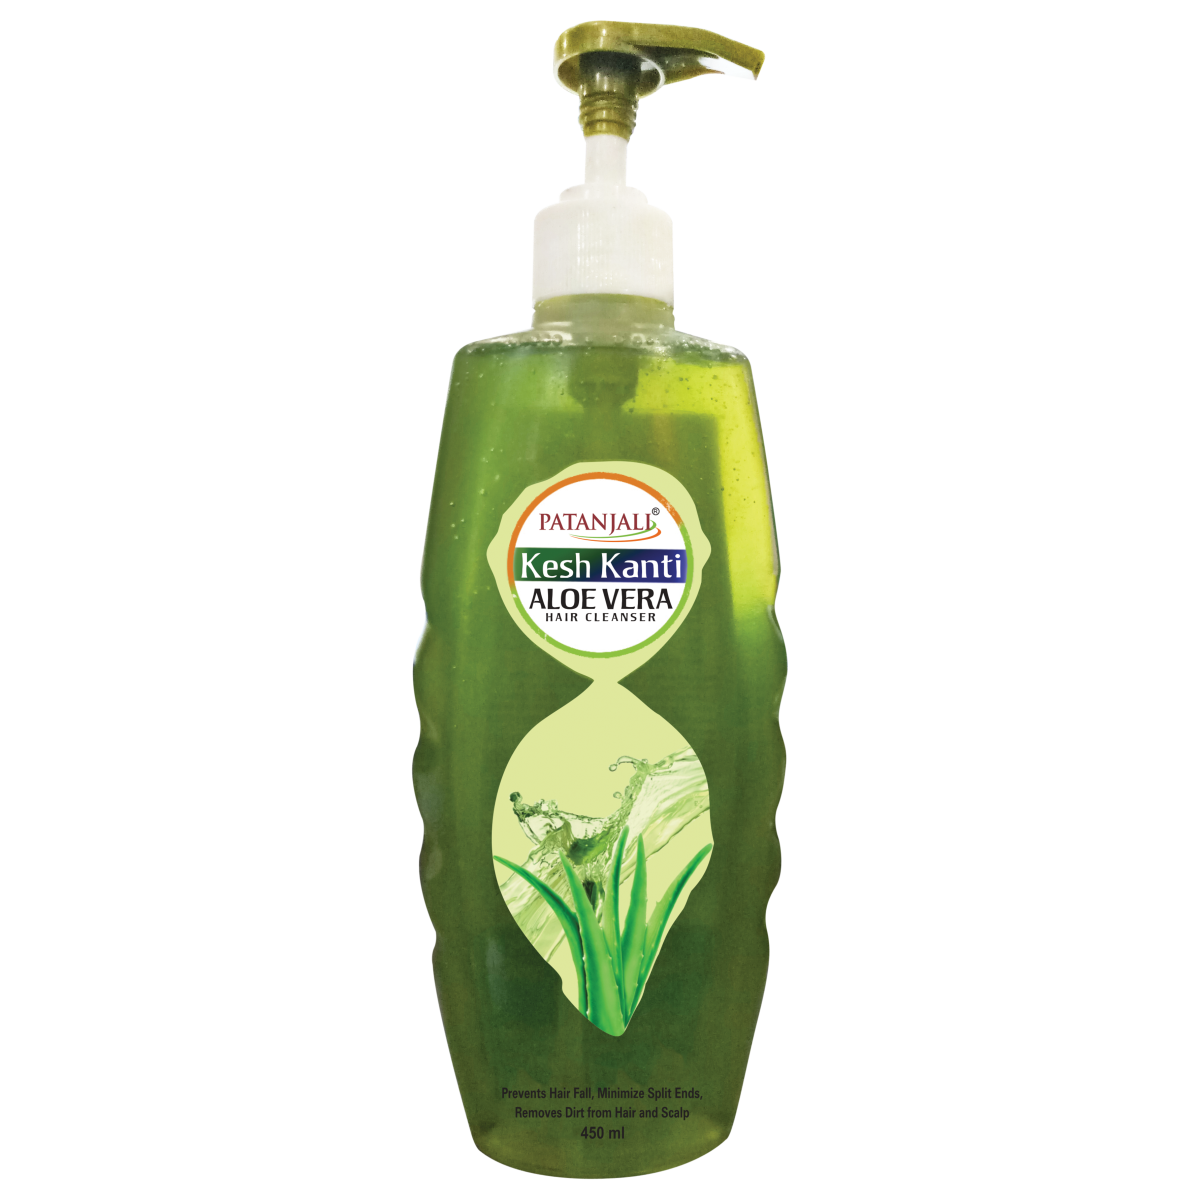 Patanjali Kesh Kanti Natural Hair Cleanser 200ml - Buy Online at Shantiya